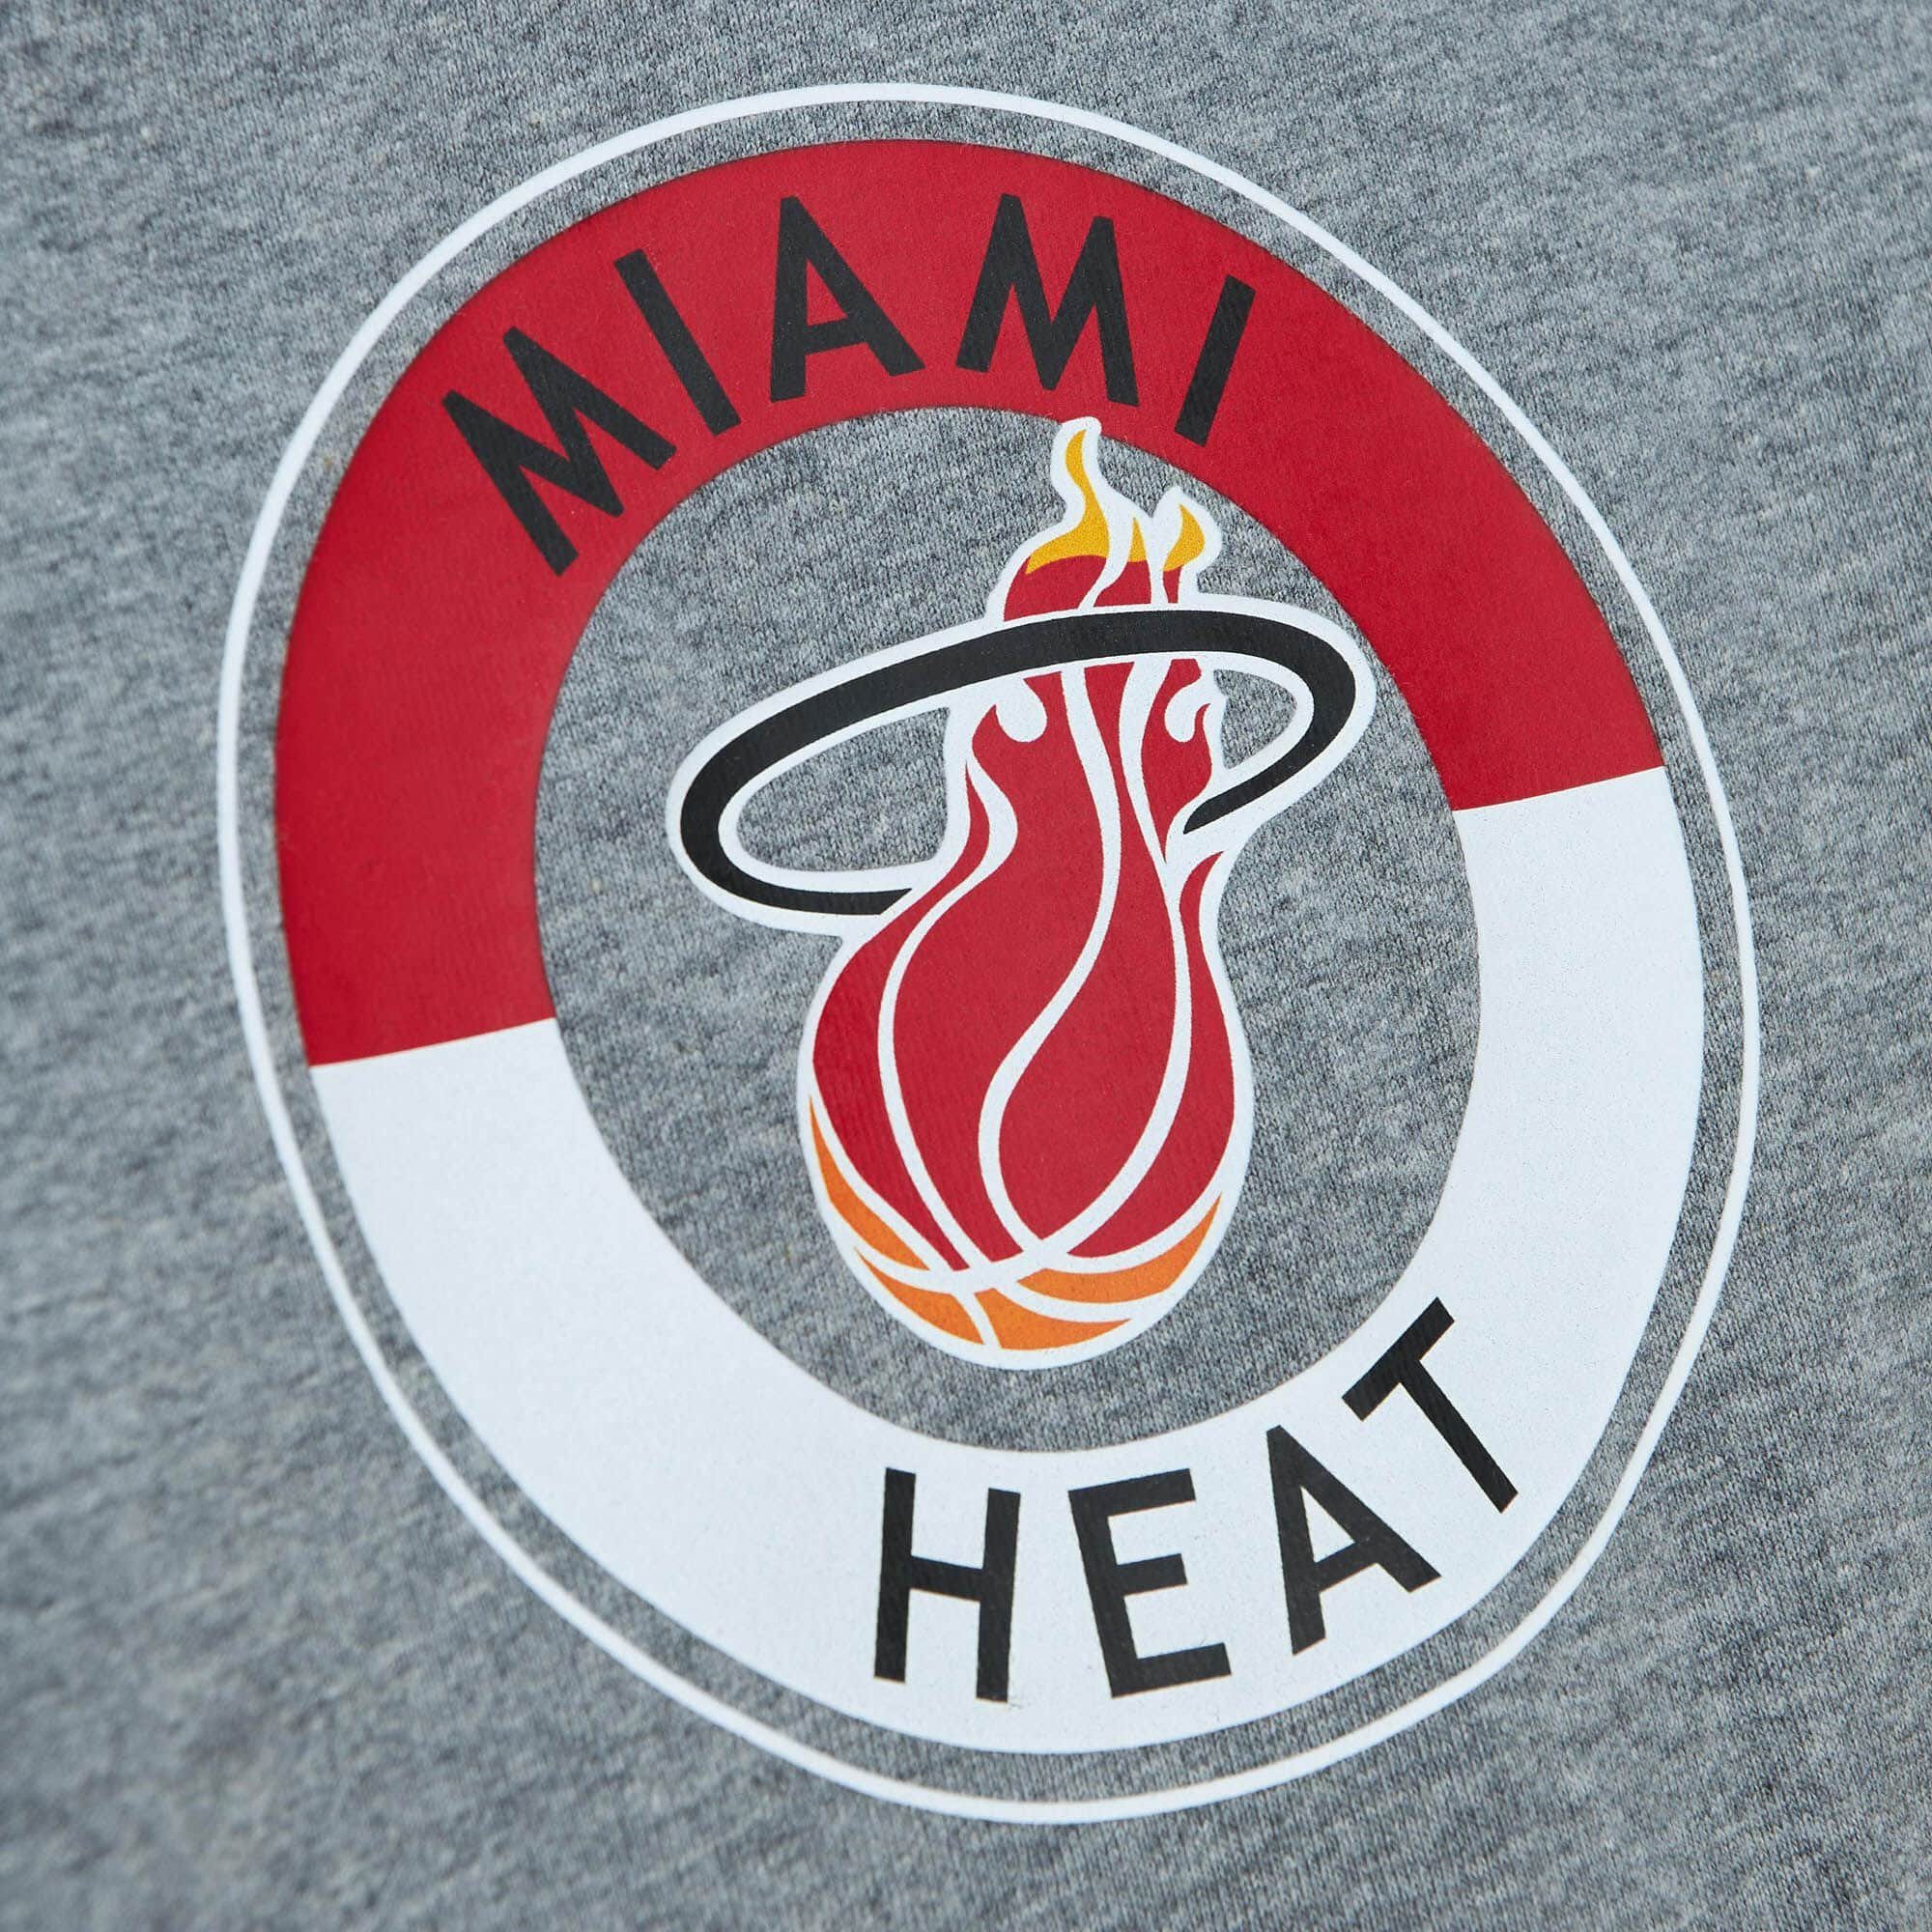 Ness Mitchell & CITY Miami Print-Shirt HOMETOWN Heat